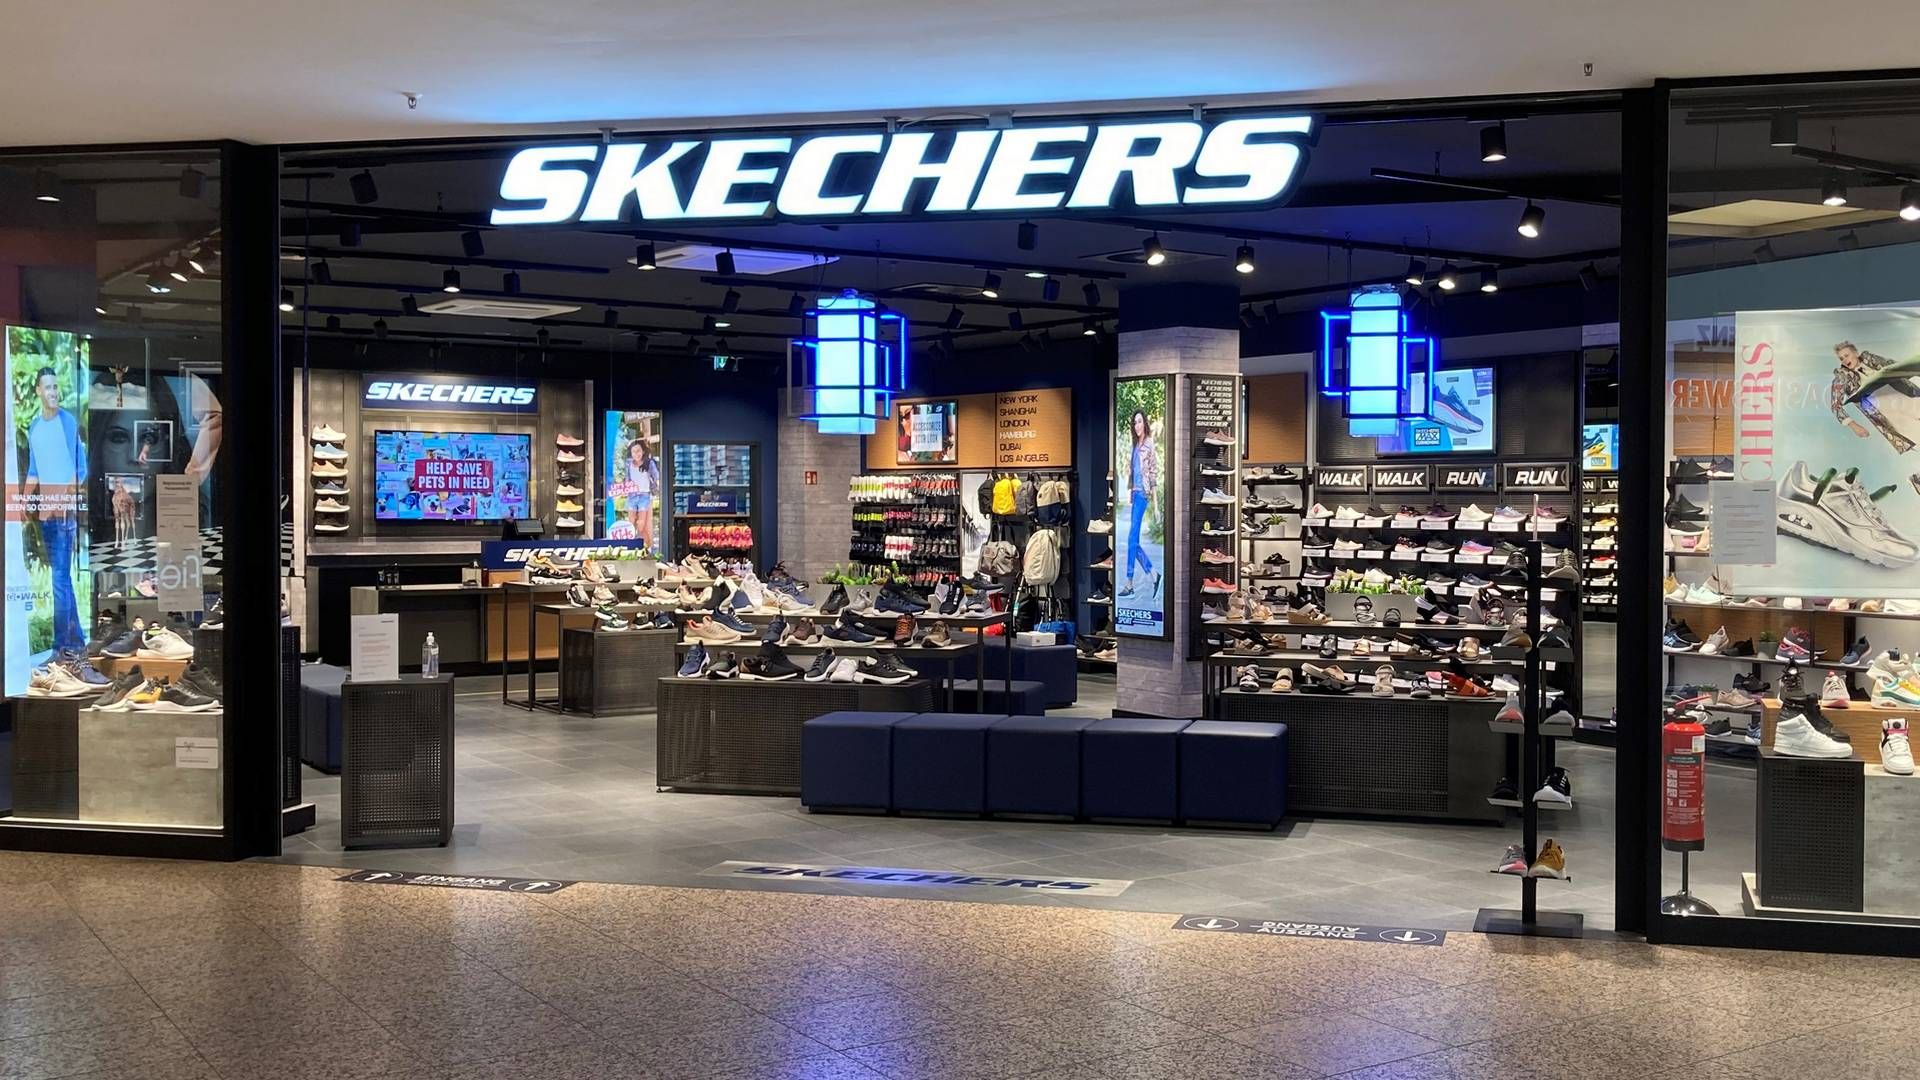 Skechers-ejer ni forretninger fra franchisetager — DetailWatch